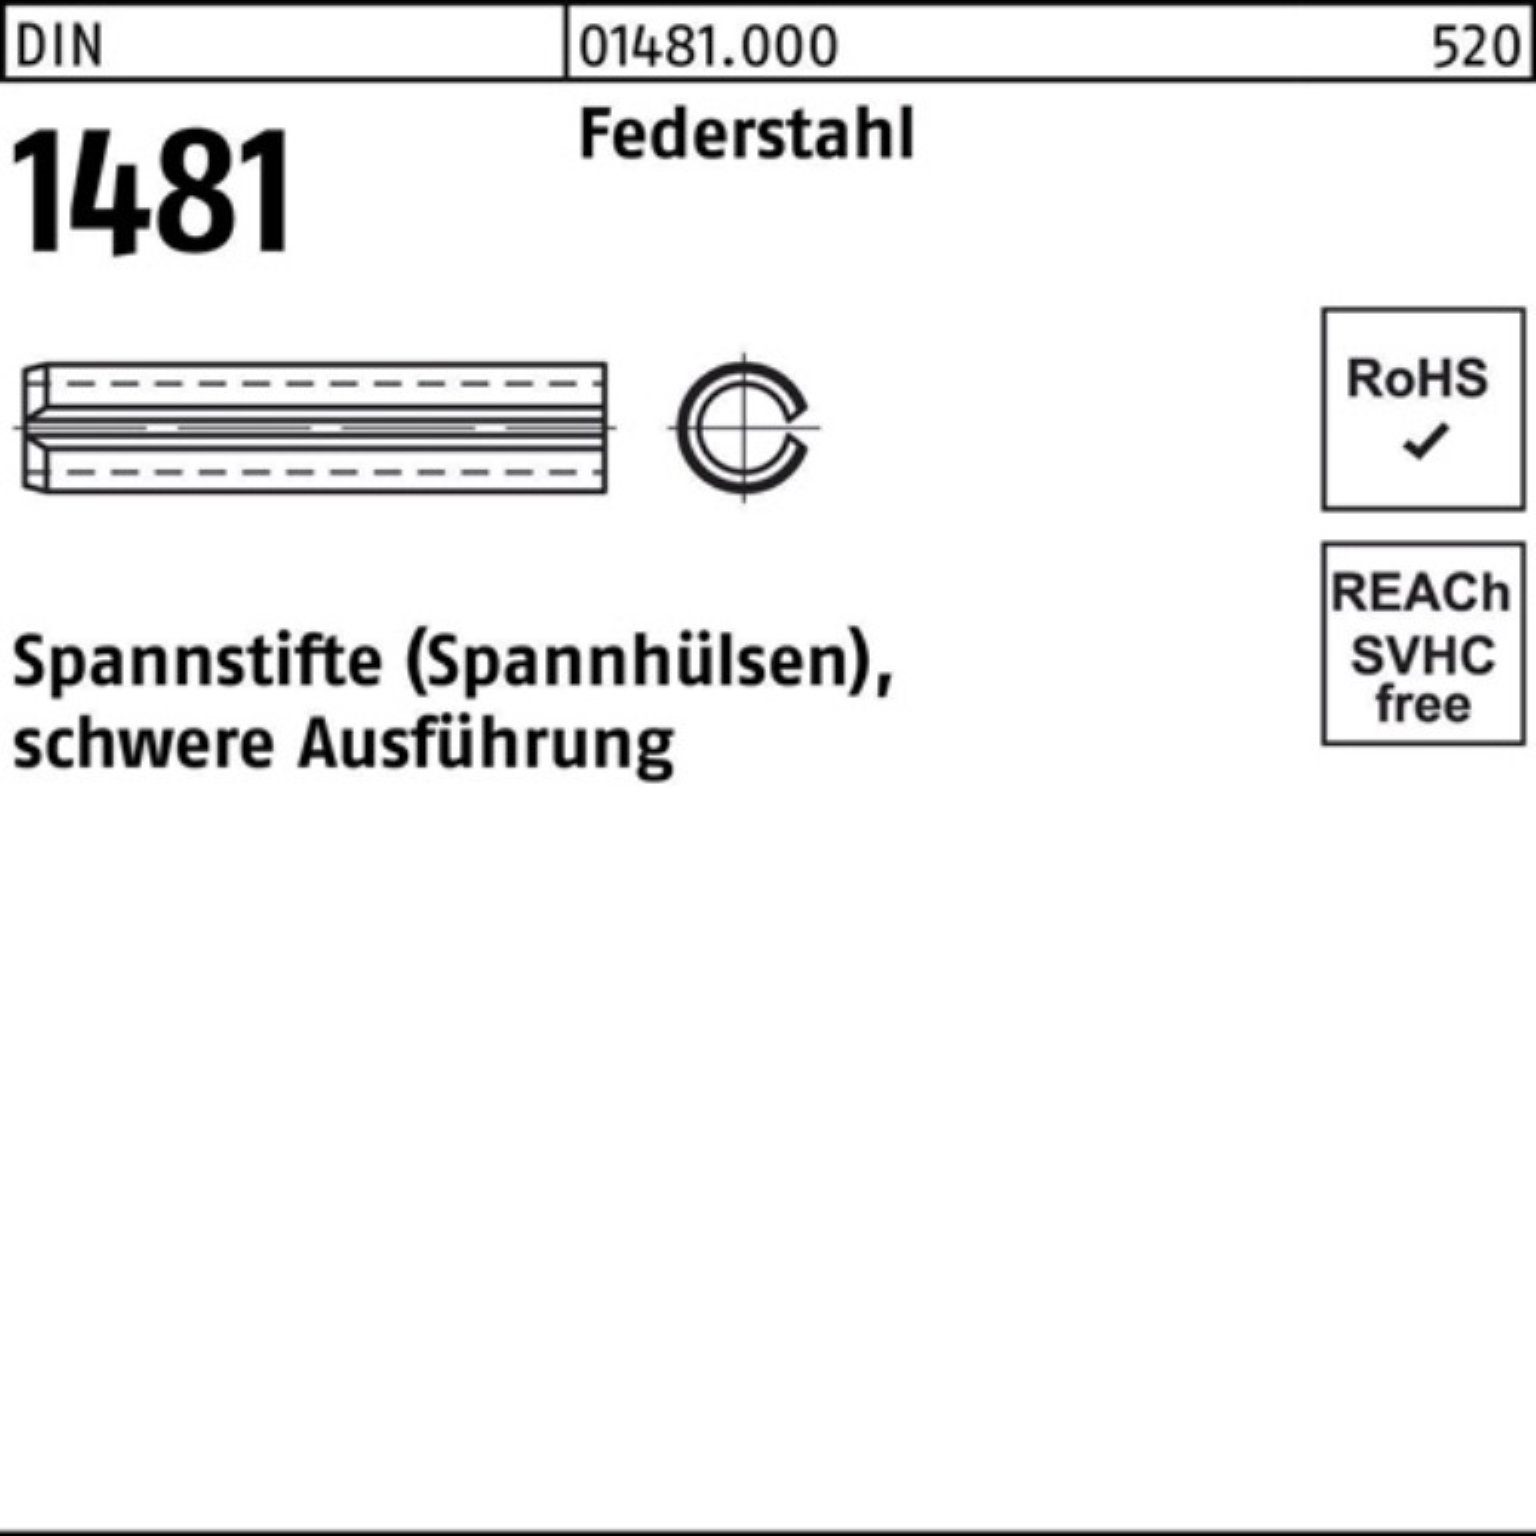 Reyher Spannstift 100er Pack Spannstift DIN 1481 10x 26 Federstahl schwere Ausführung 1